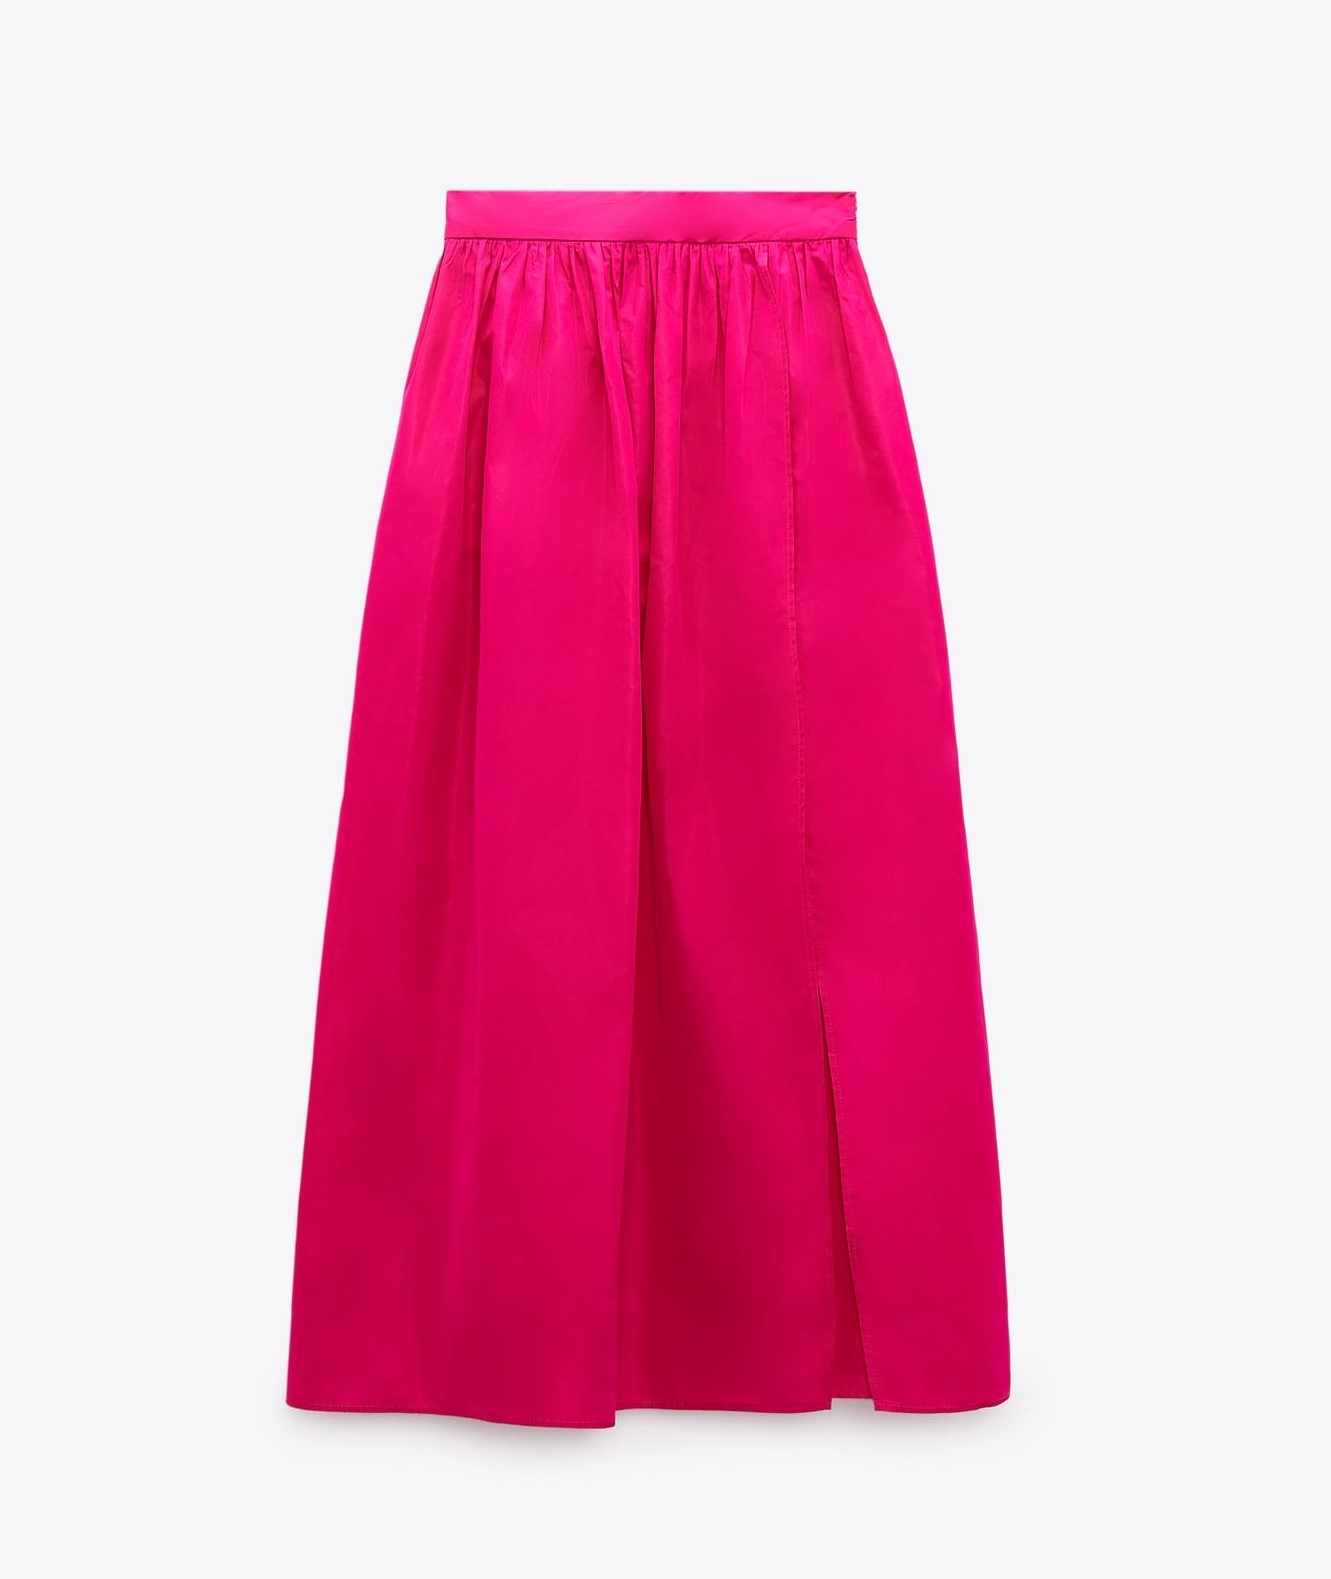 Falda rosa de Zara.